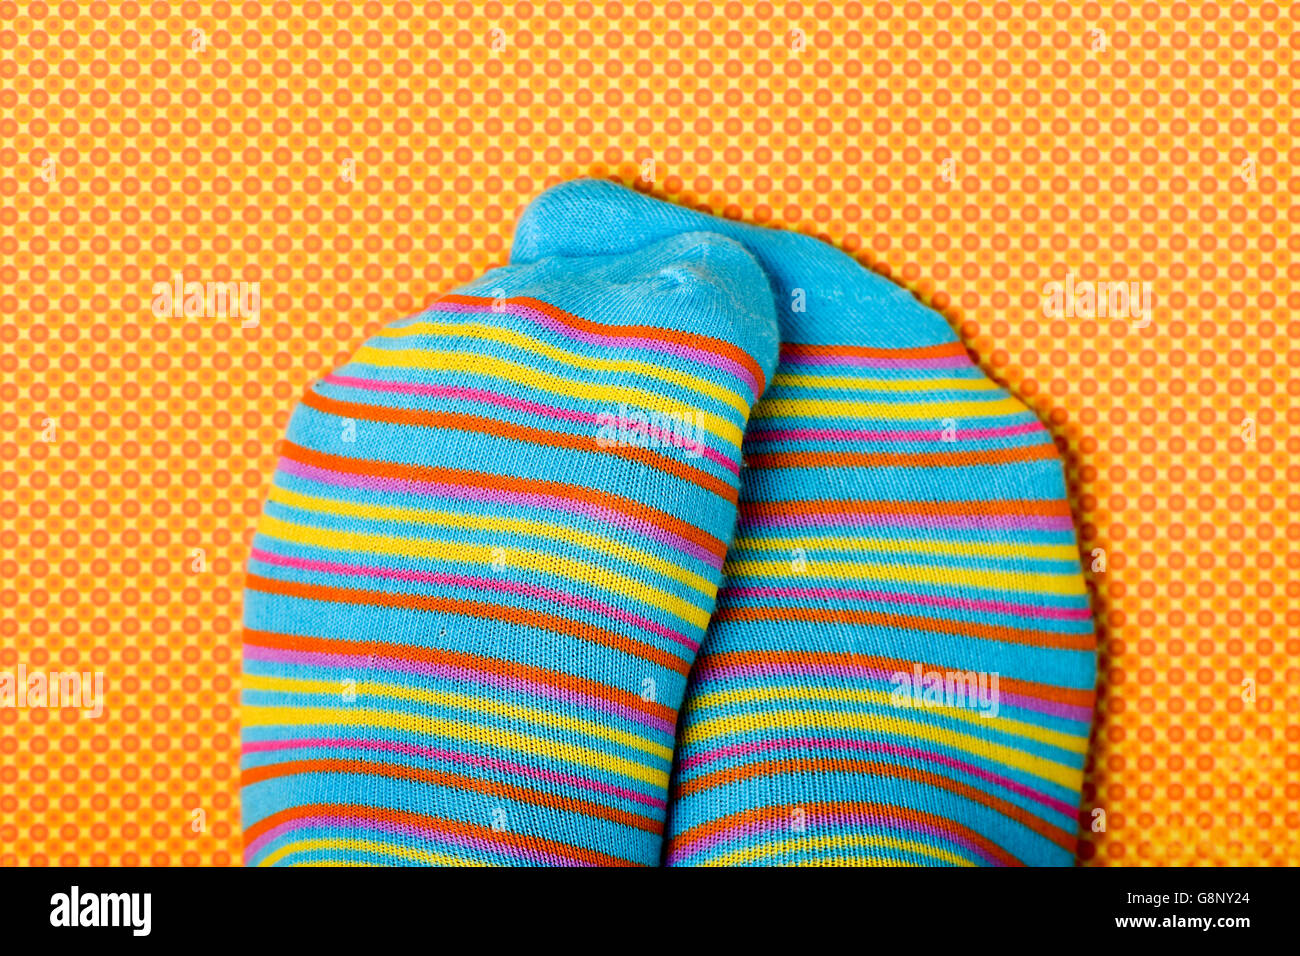 Nahaufnahme einer Person seine oder ihre Füße tragen buntere gestreift gemusterte Socken, auf eine orange und gelb gemusterten Zeitmessung reiben Stockfoto